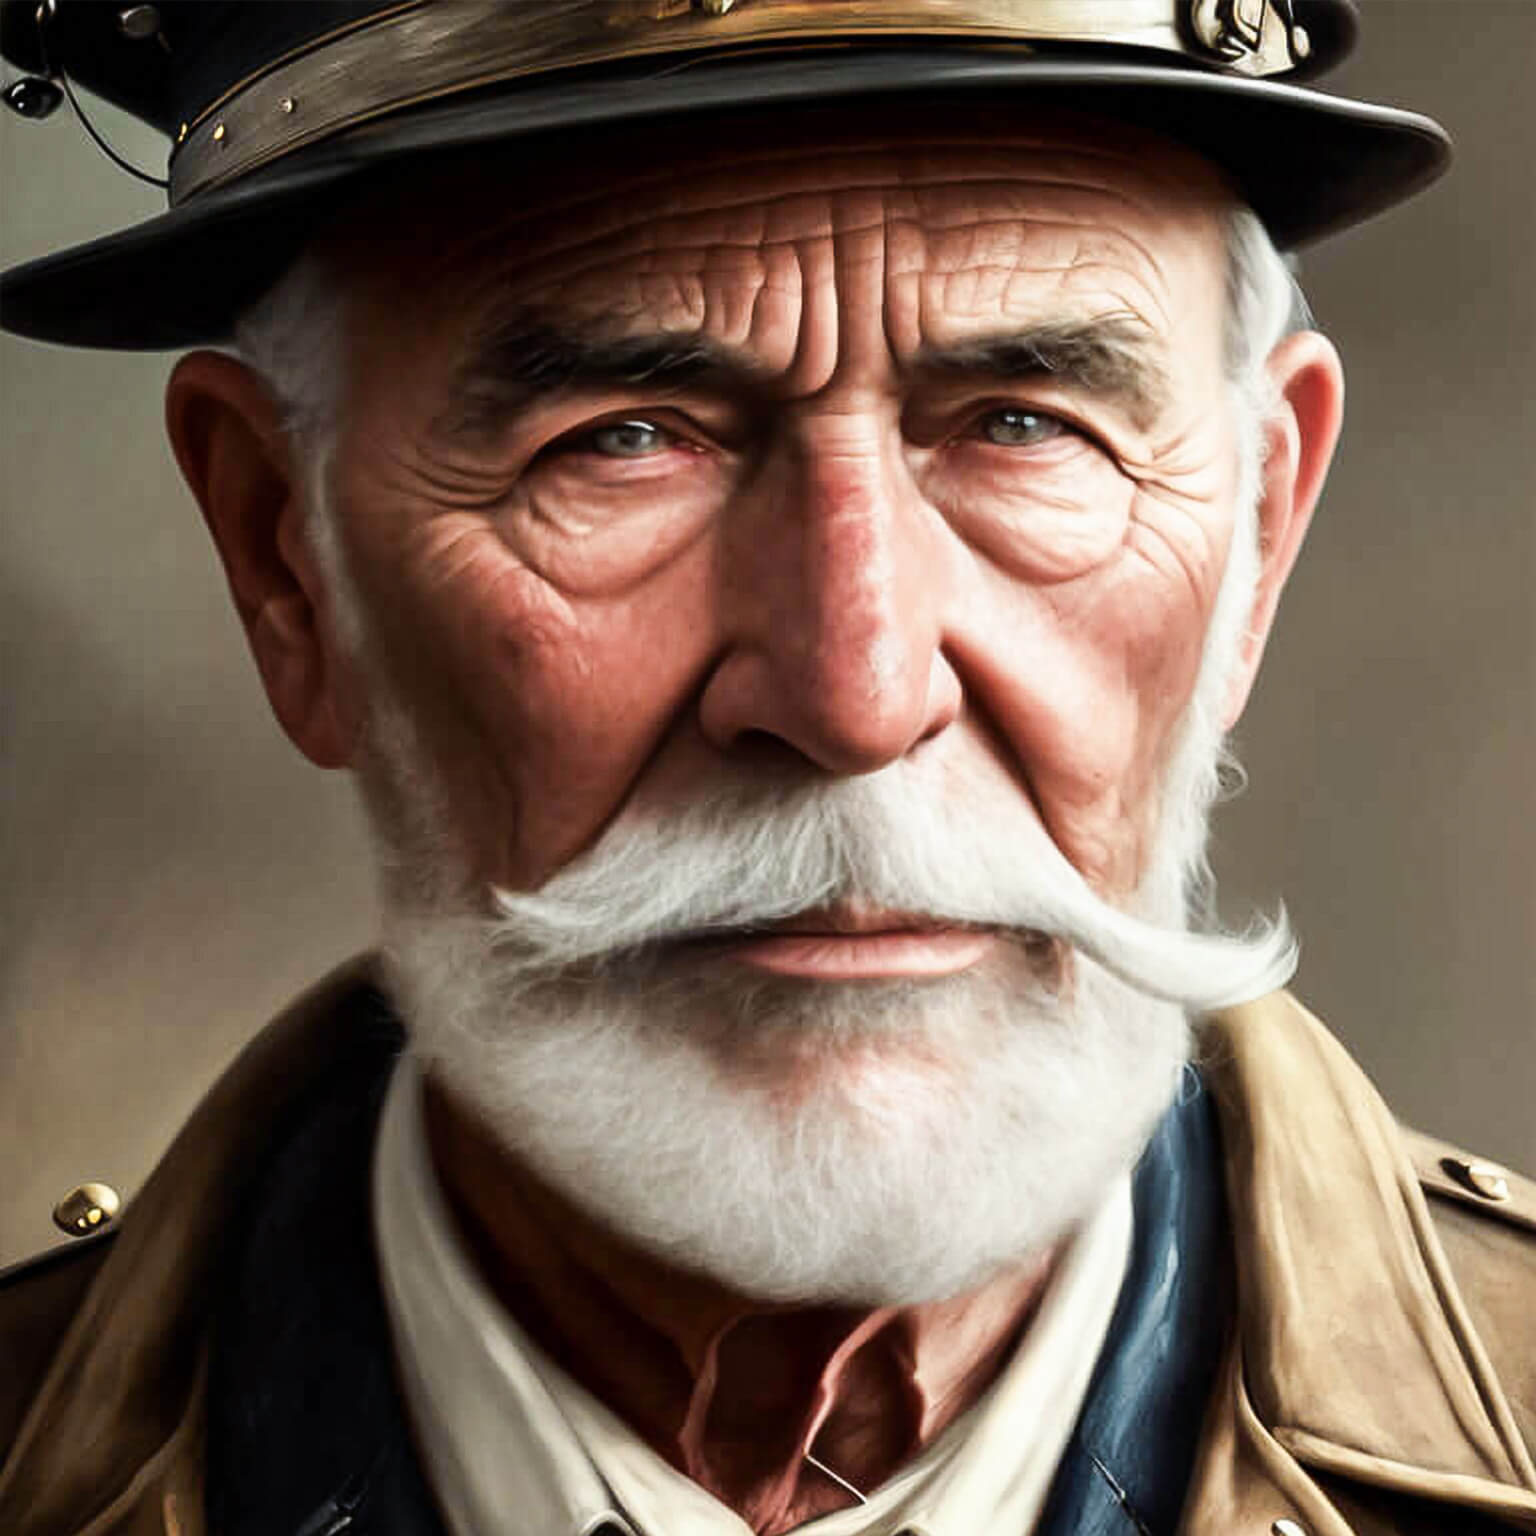 Ein KI Bild von einem älteren Kohle Arbeiter mit gepflegtem Bart